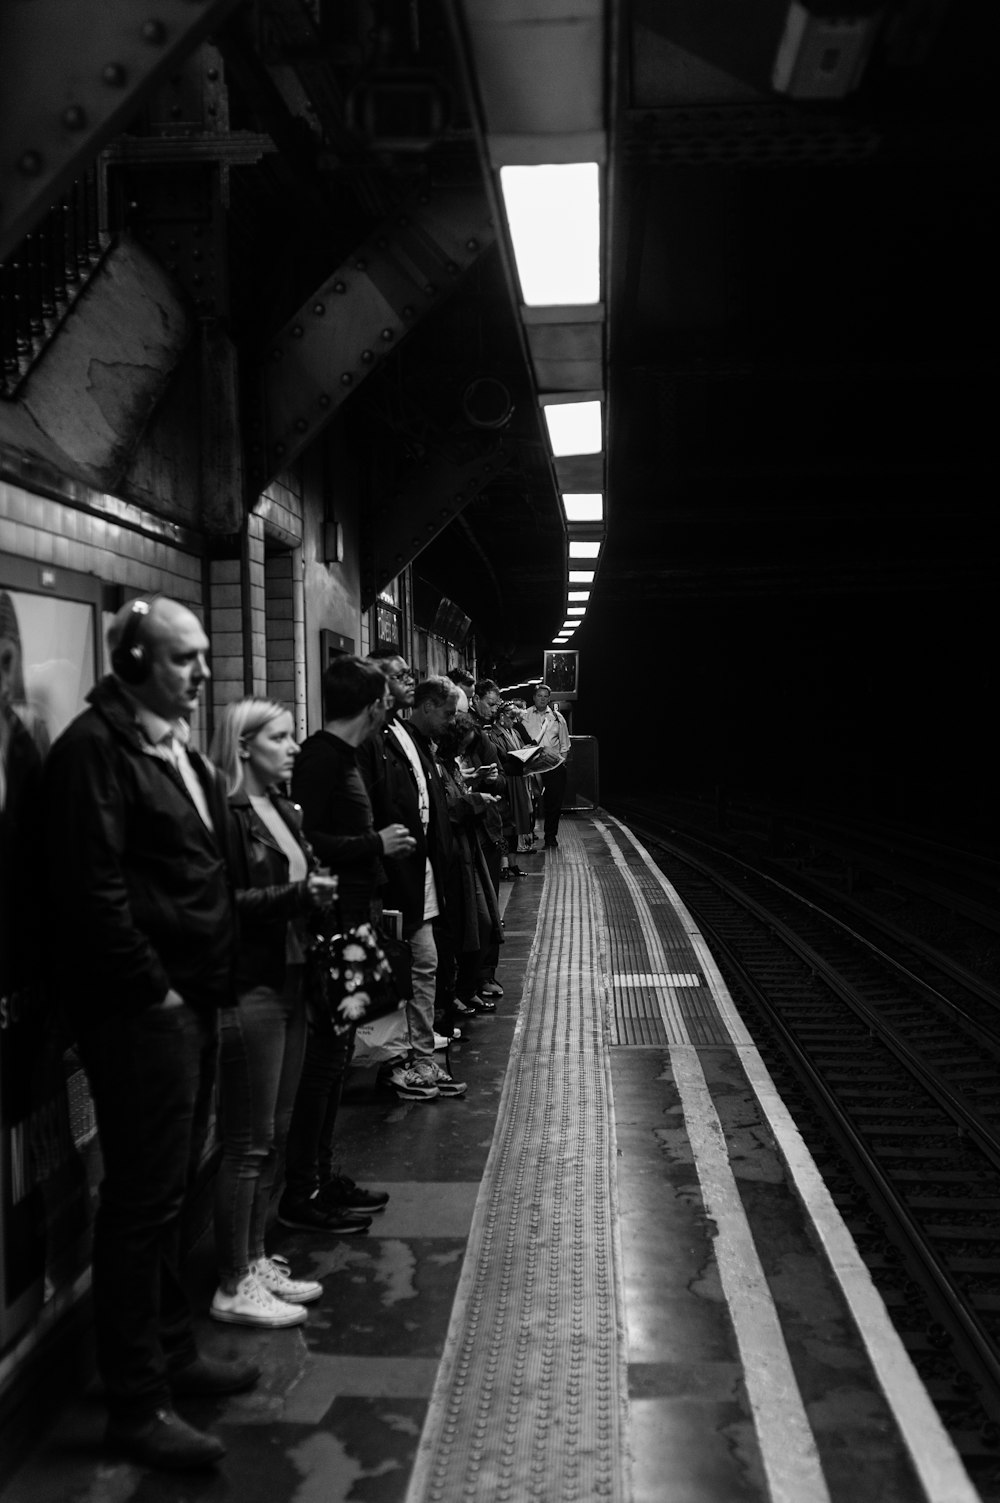 fotografia in scala di grigi di persone in piedi accanto alla ferrovia del treno